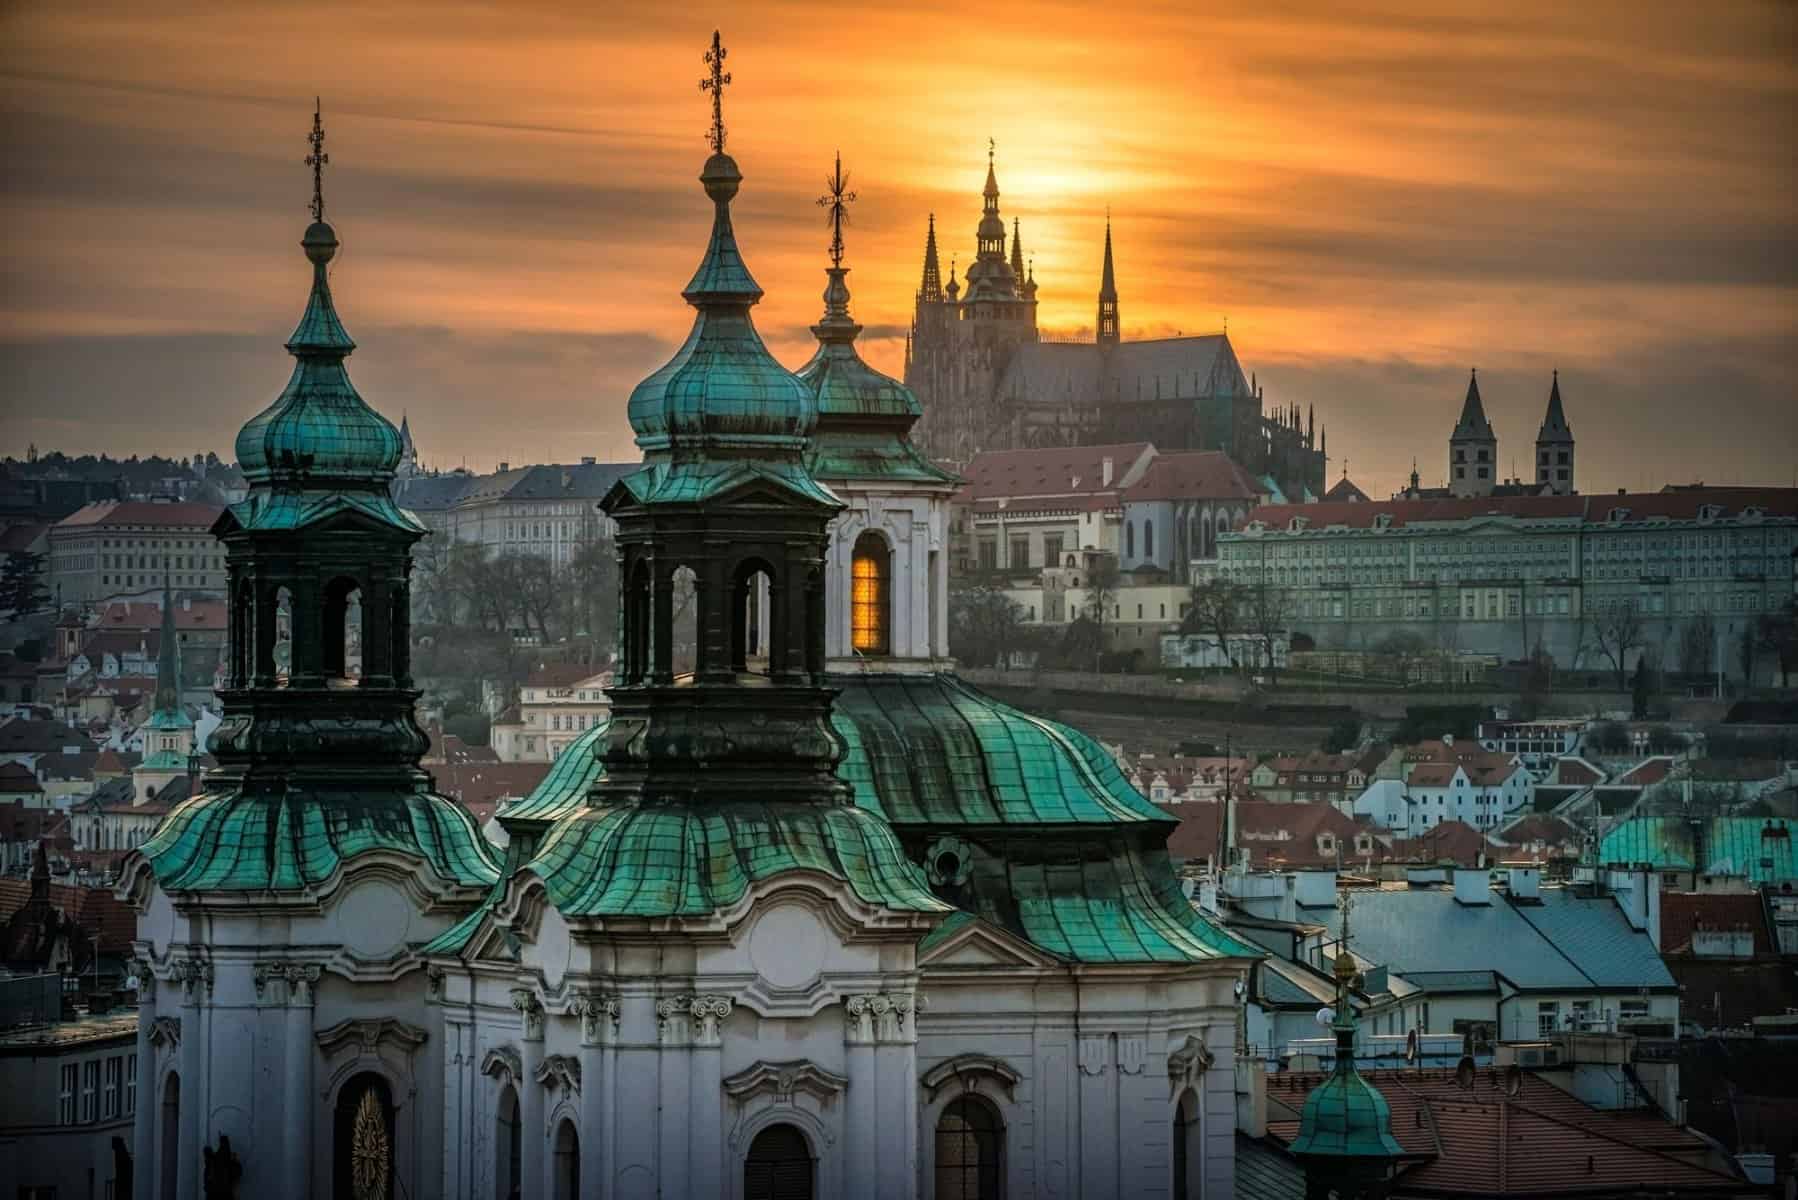 Hradschin-Prague-city-tourism